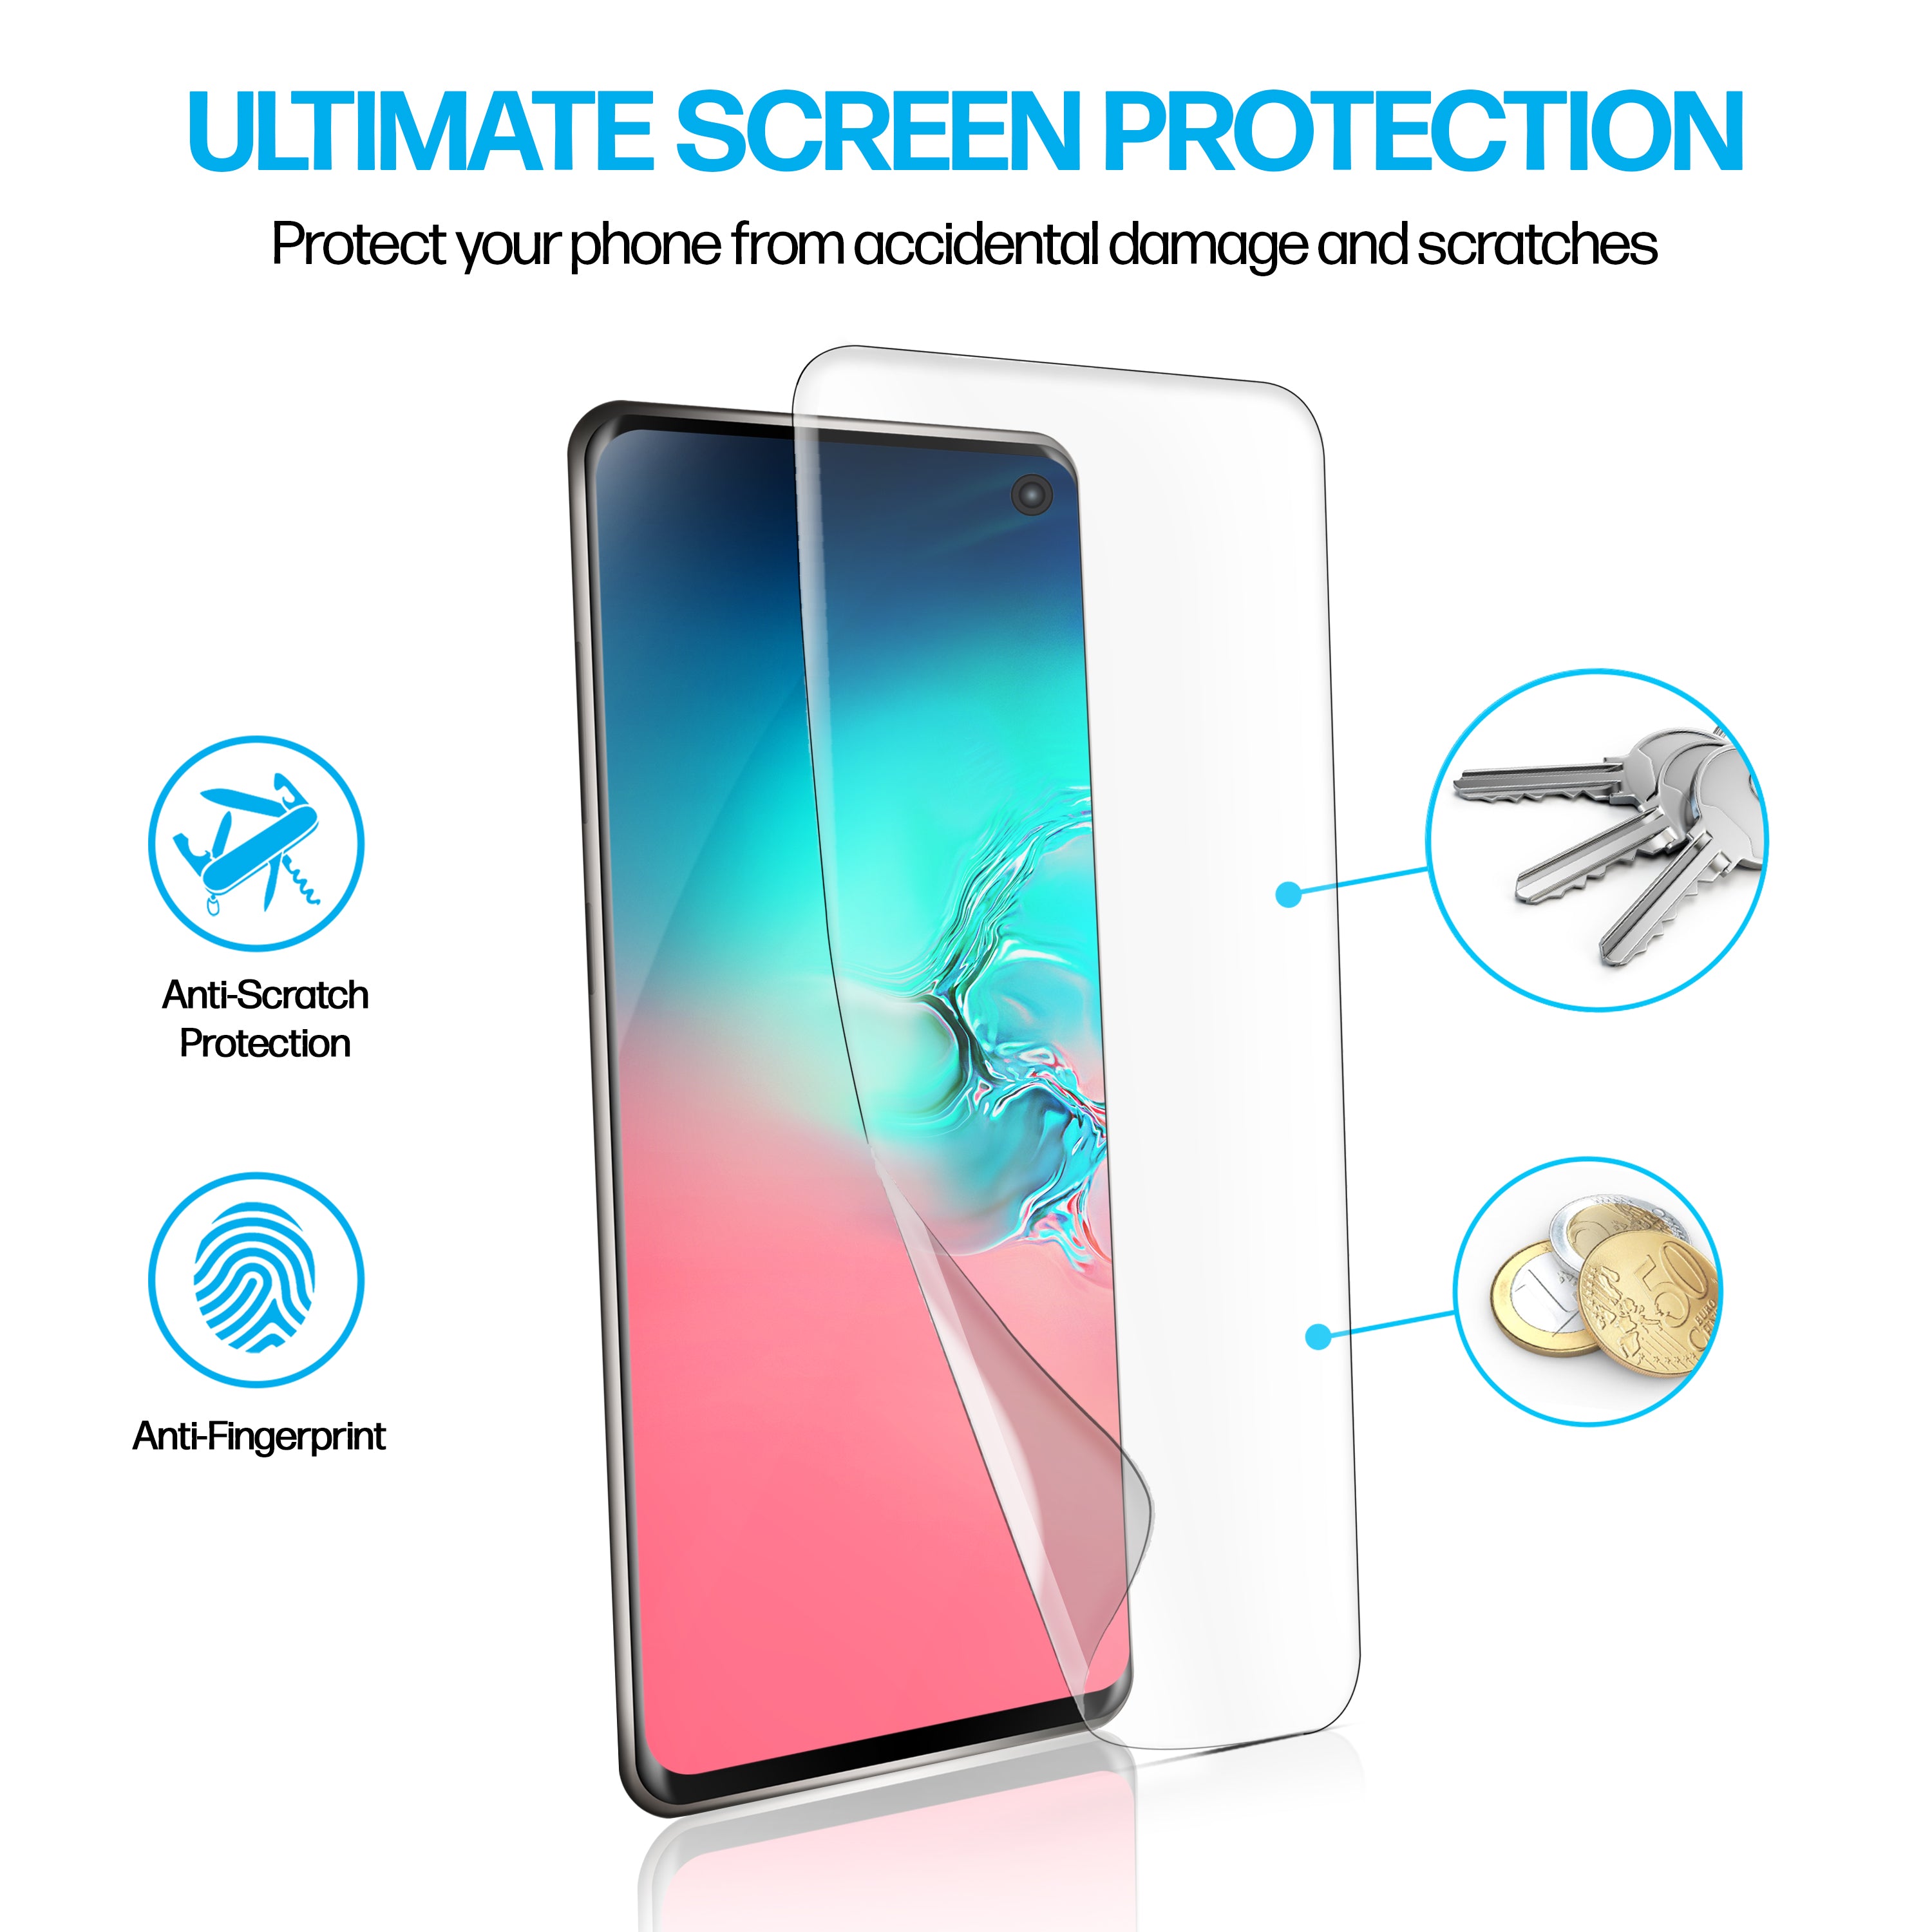 Samsung Galaxy S10 TPU Anti-Scratch Screen Protector Film [2-Pack]